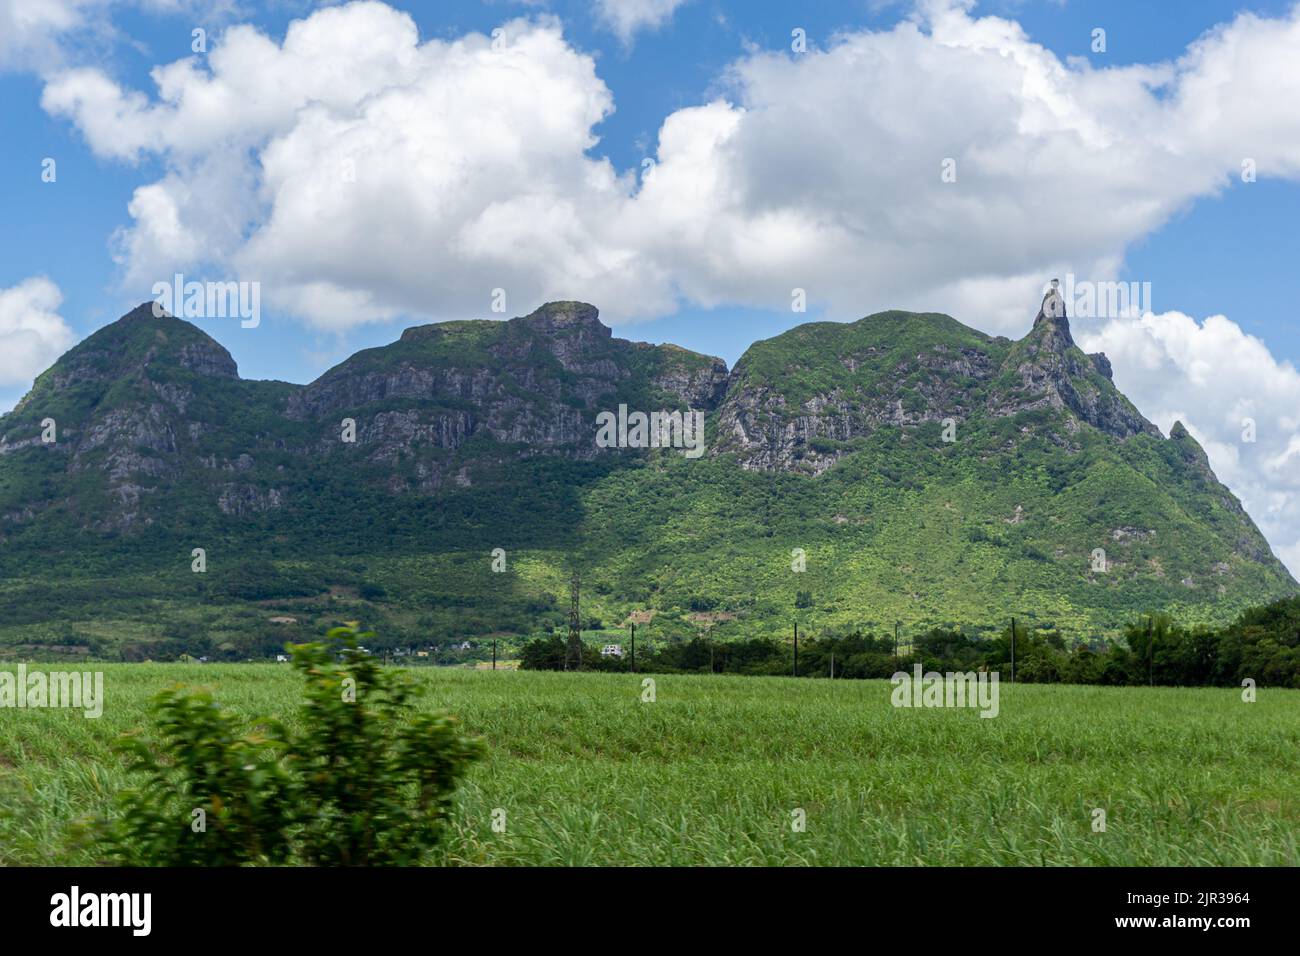 Pieter les deux montagnes vue sur un champ de canne à sucre, Maurice Banque D'Images